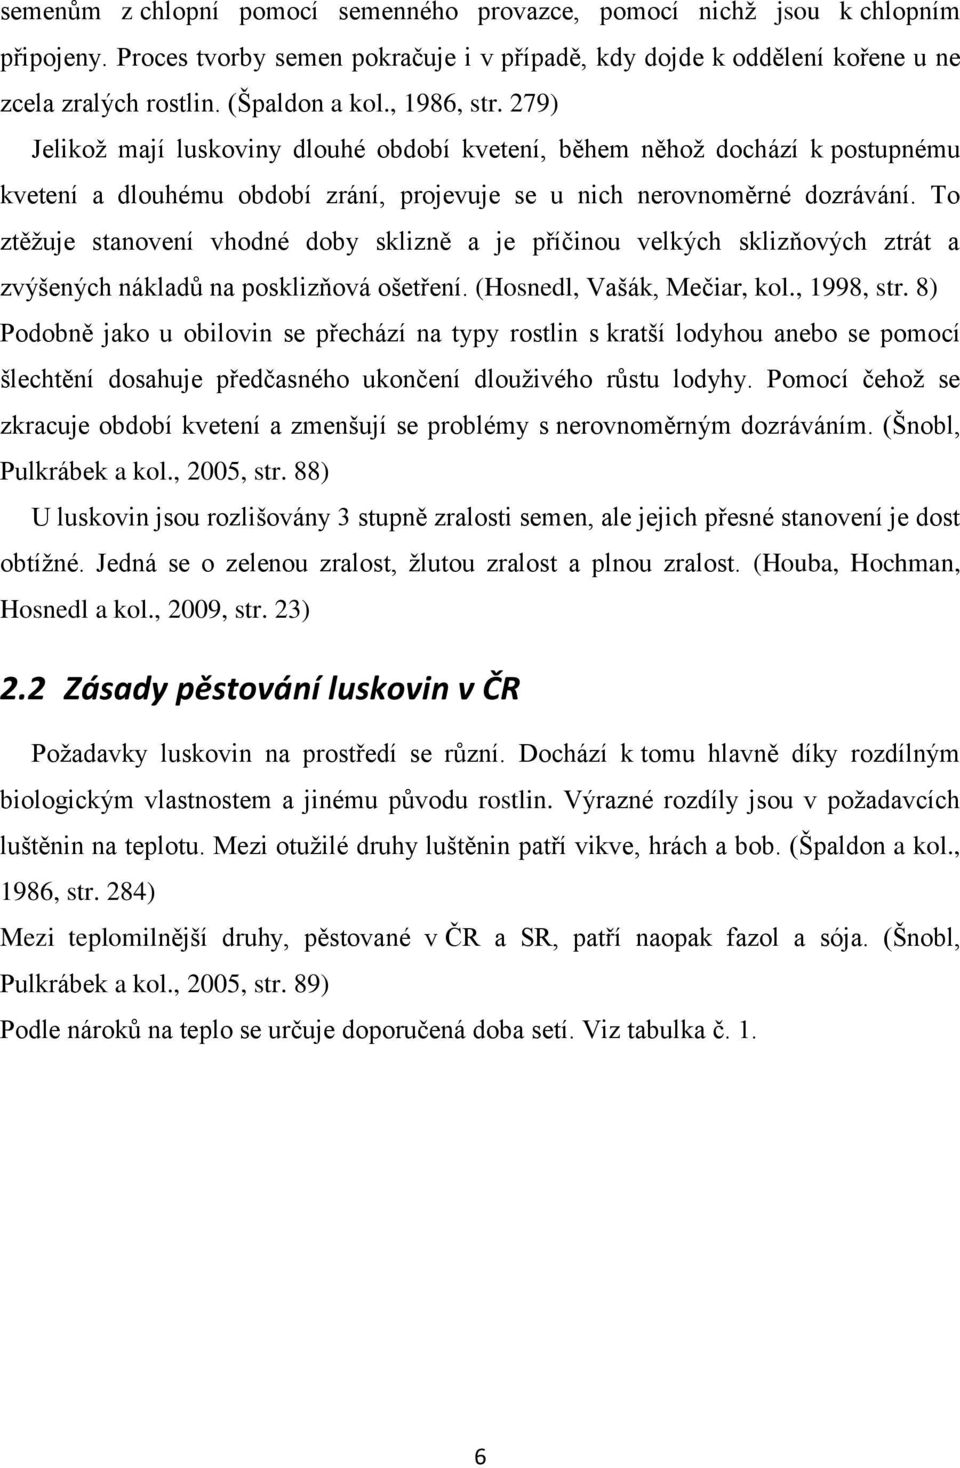 To ztěžuje stanovení vhodné doby sklizně a je příčinou velkých sklizňových ztrát a zvýšených nákladů na posklizňová ošetření. (Hosnedl, Vašák, Mečiar, kol., 1998, str.